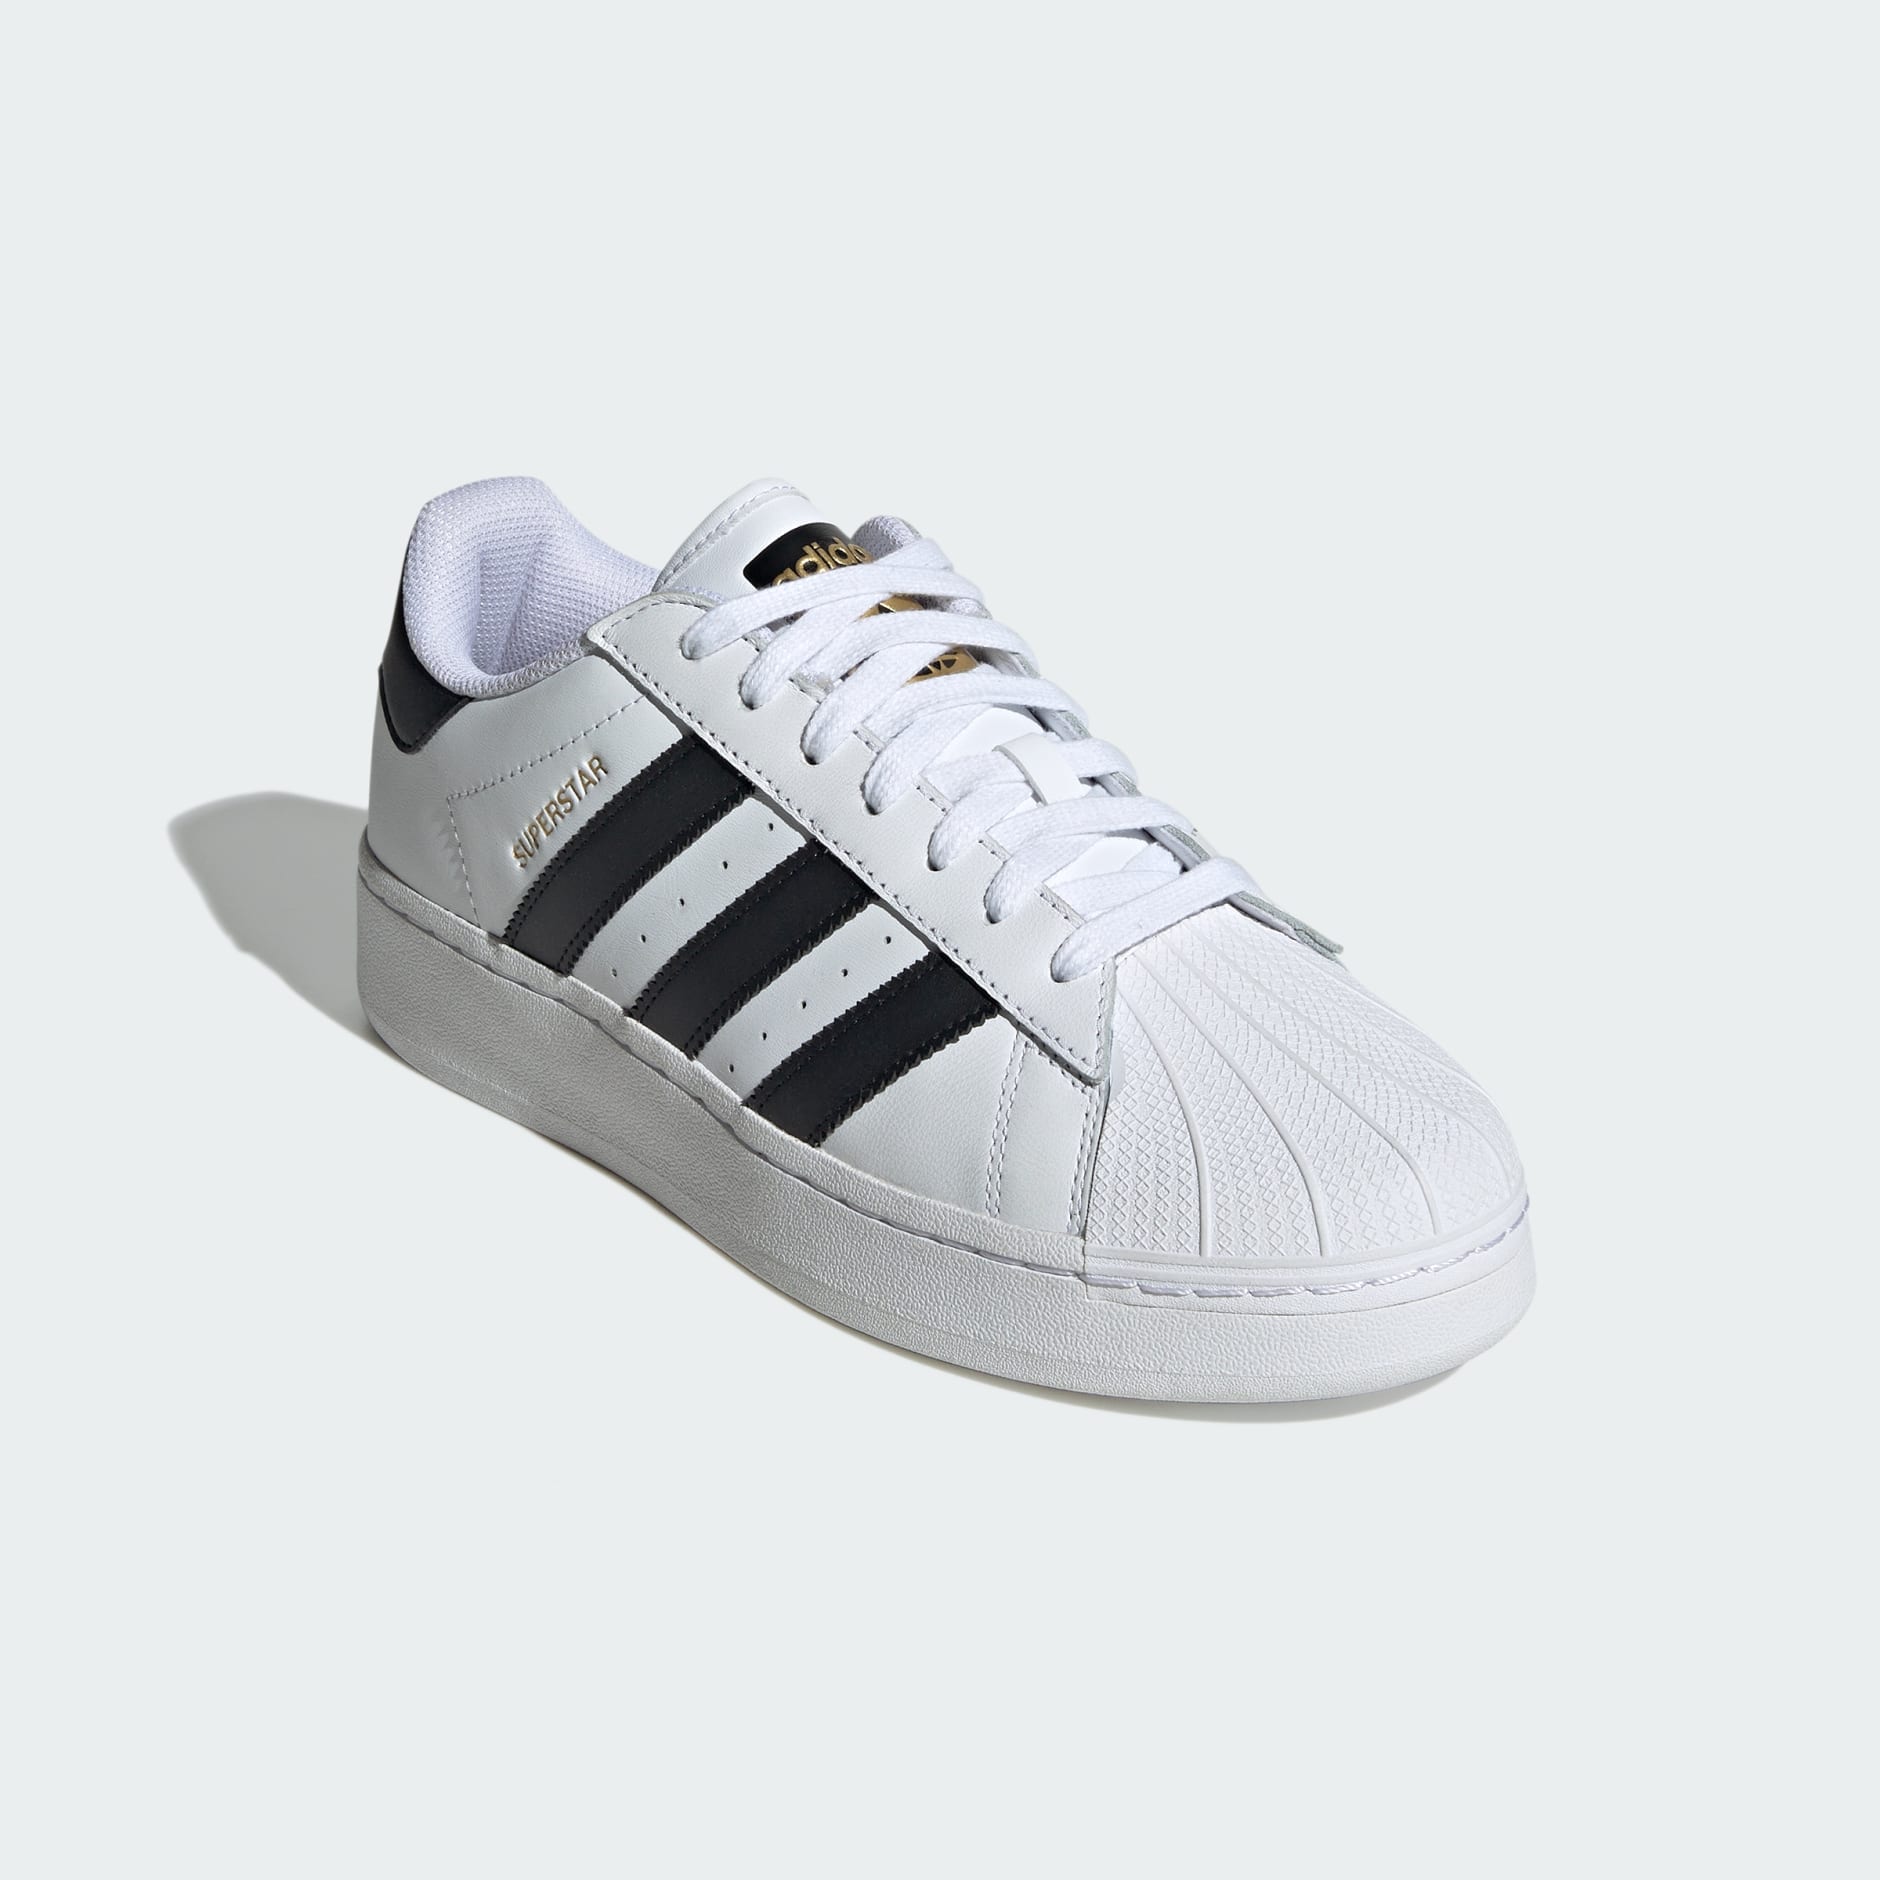 Adidas Superstar Xlg Shoes White Adidas Uae 3596